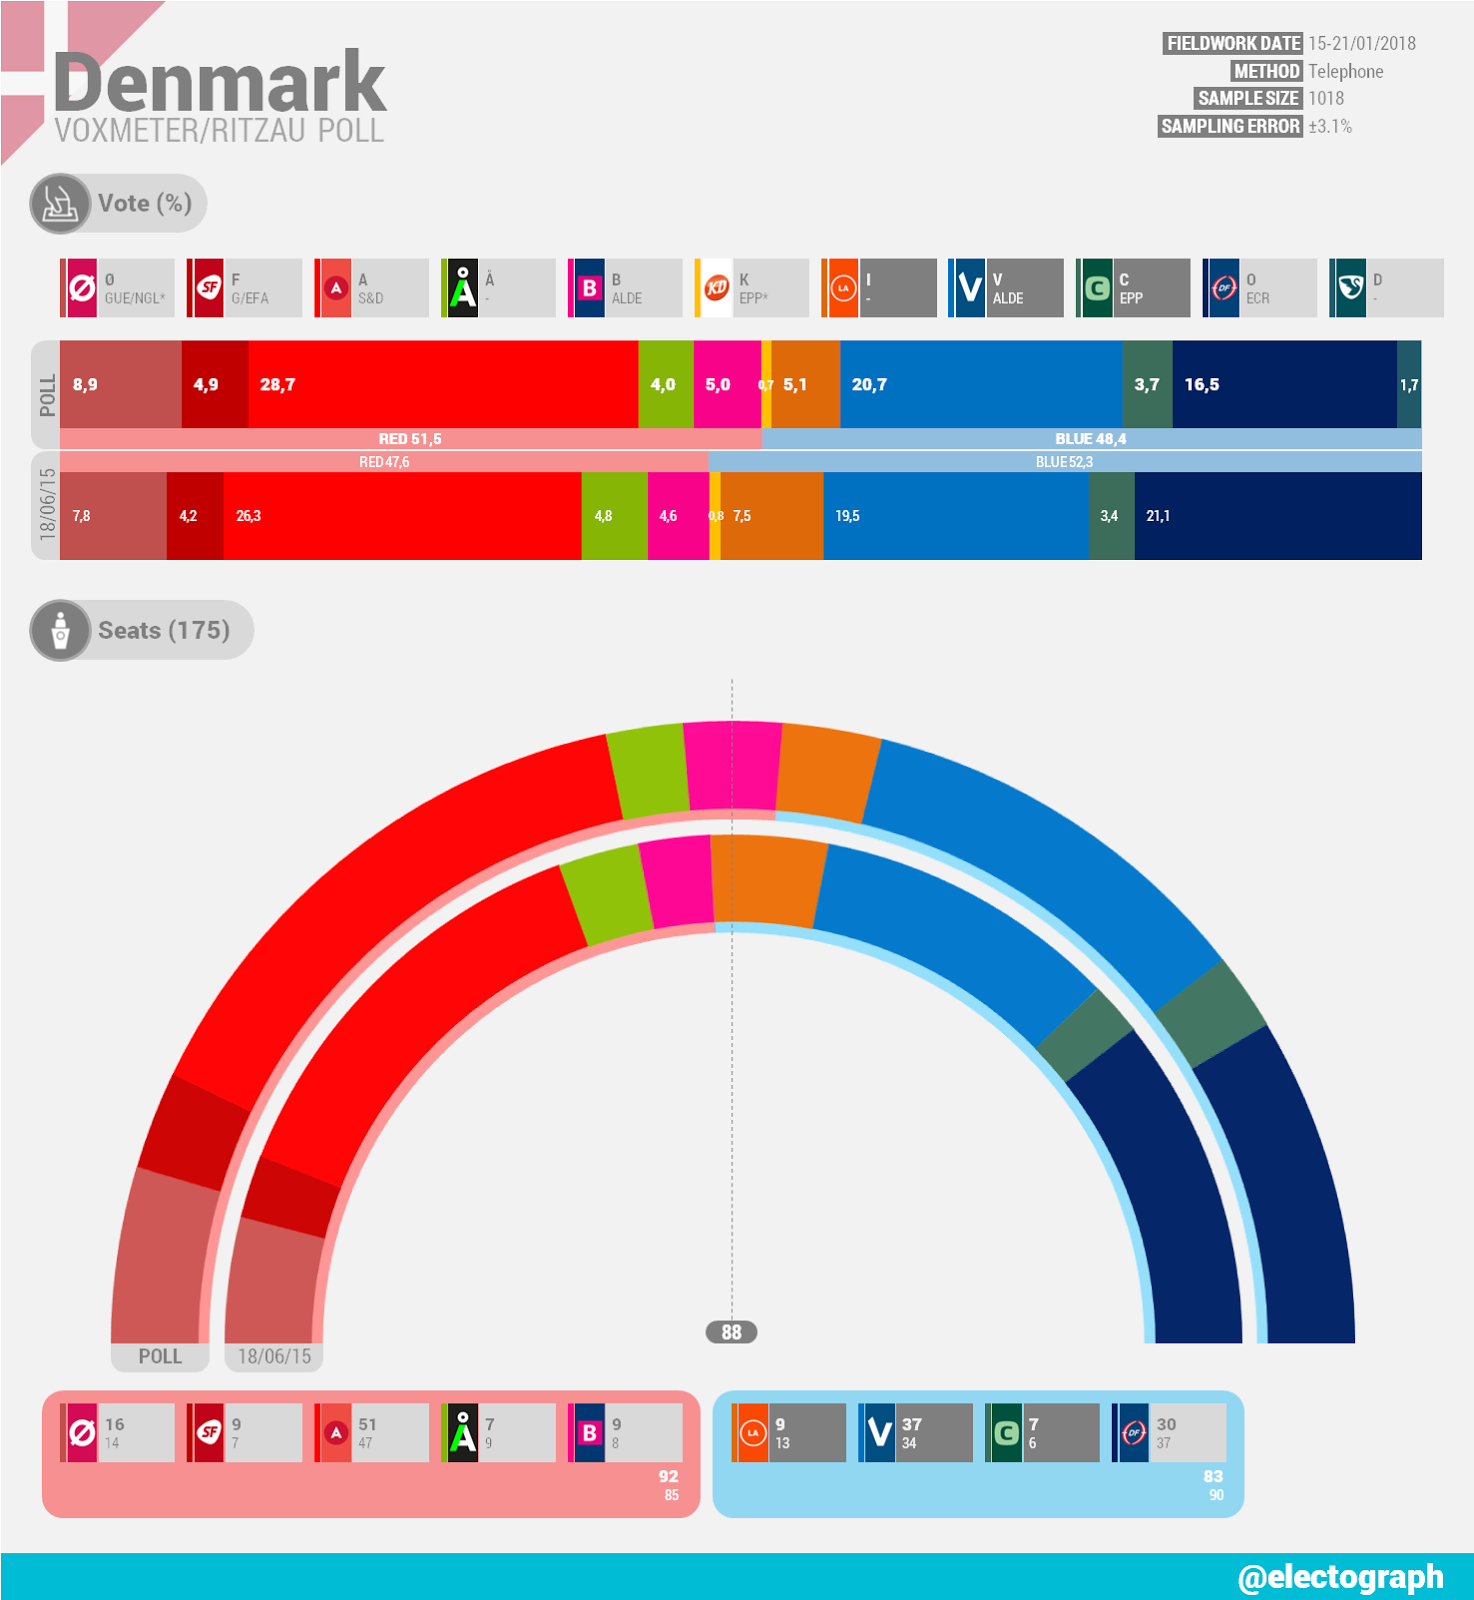 DENMARK Voxmeter poll chart for Ritzau, January 2018